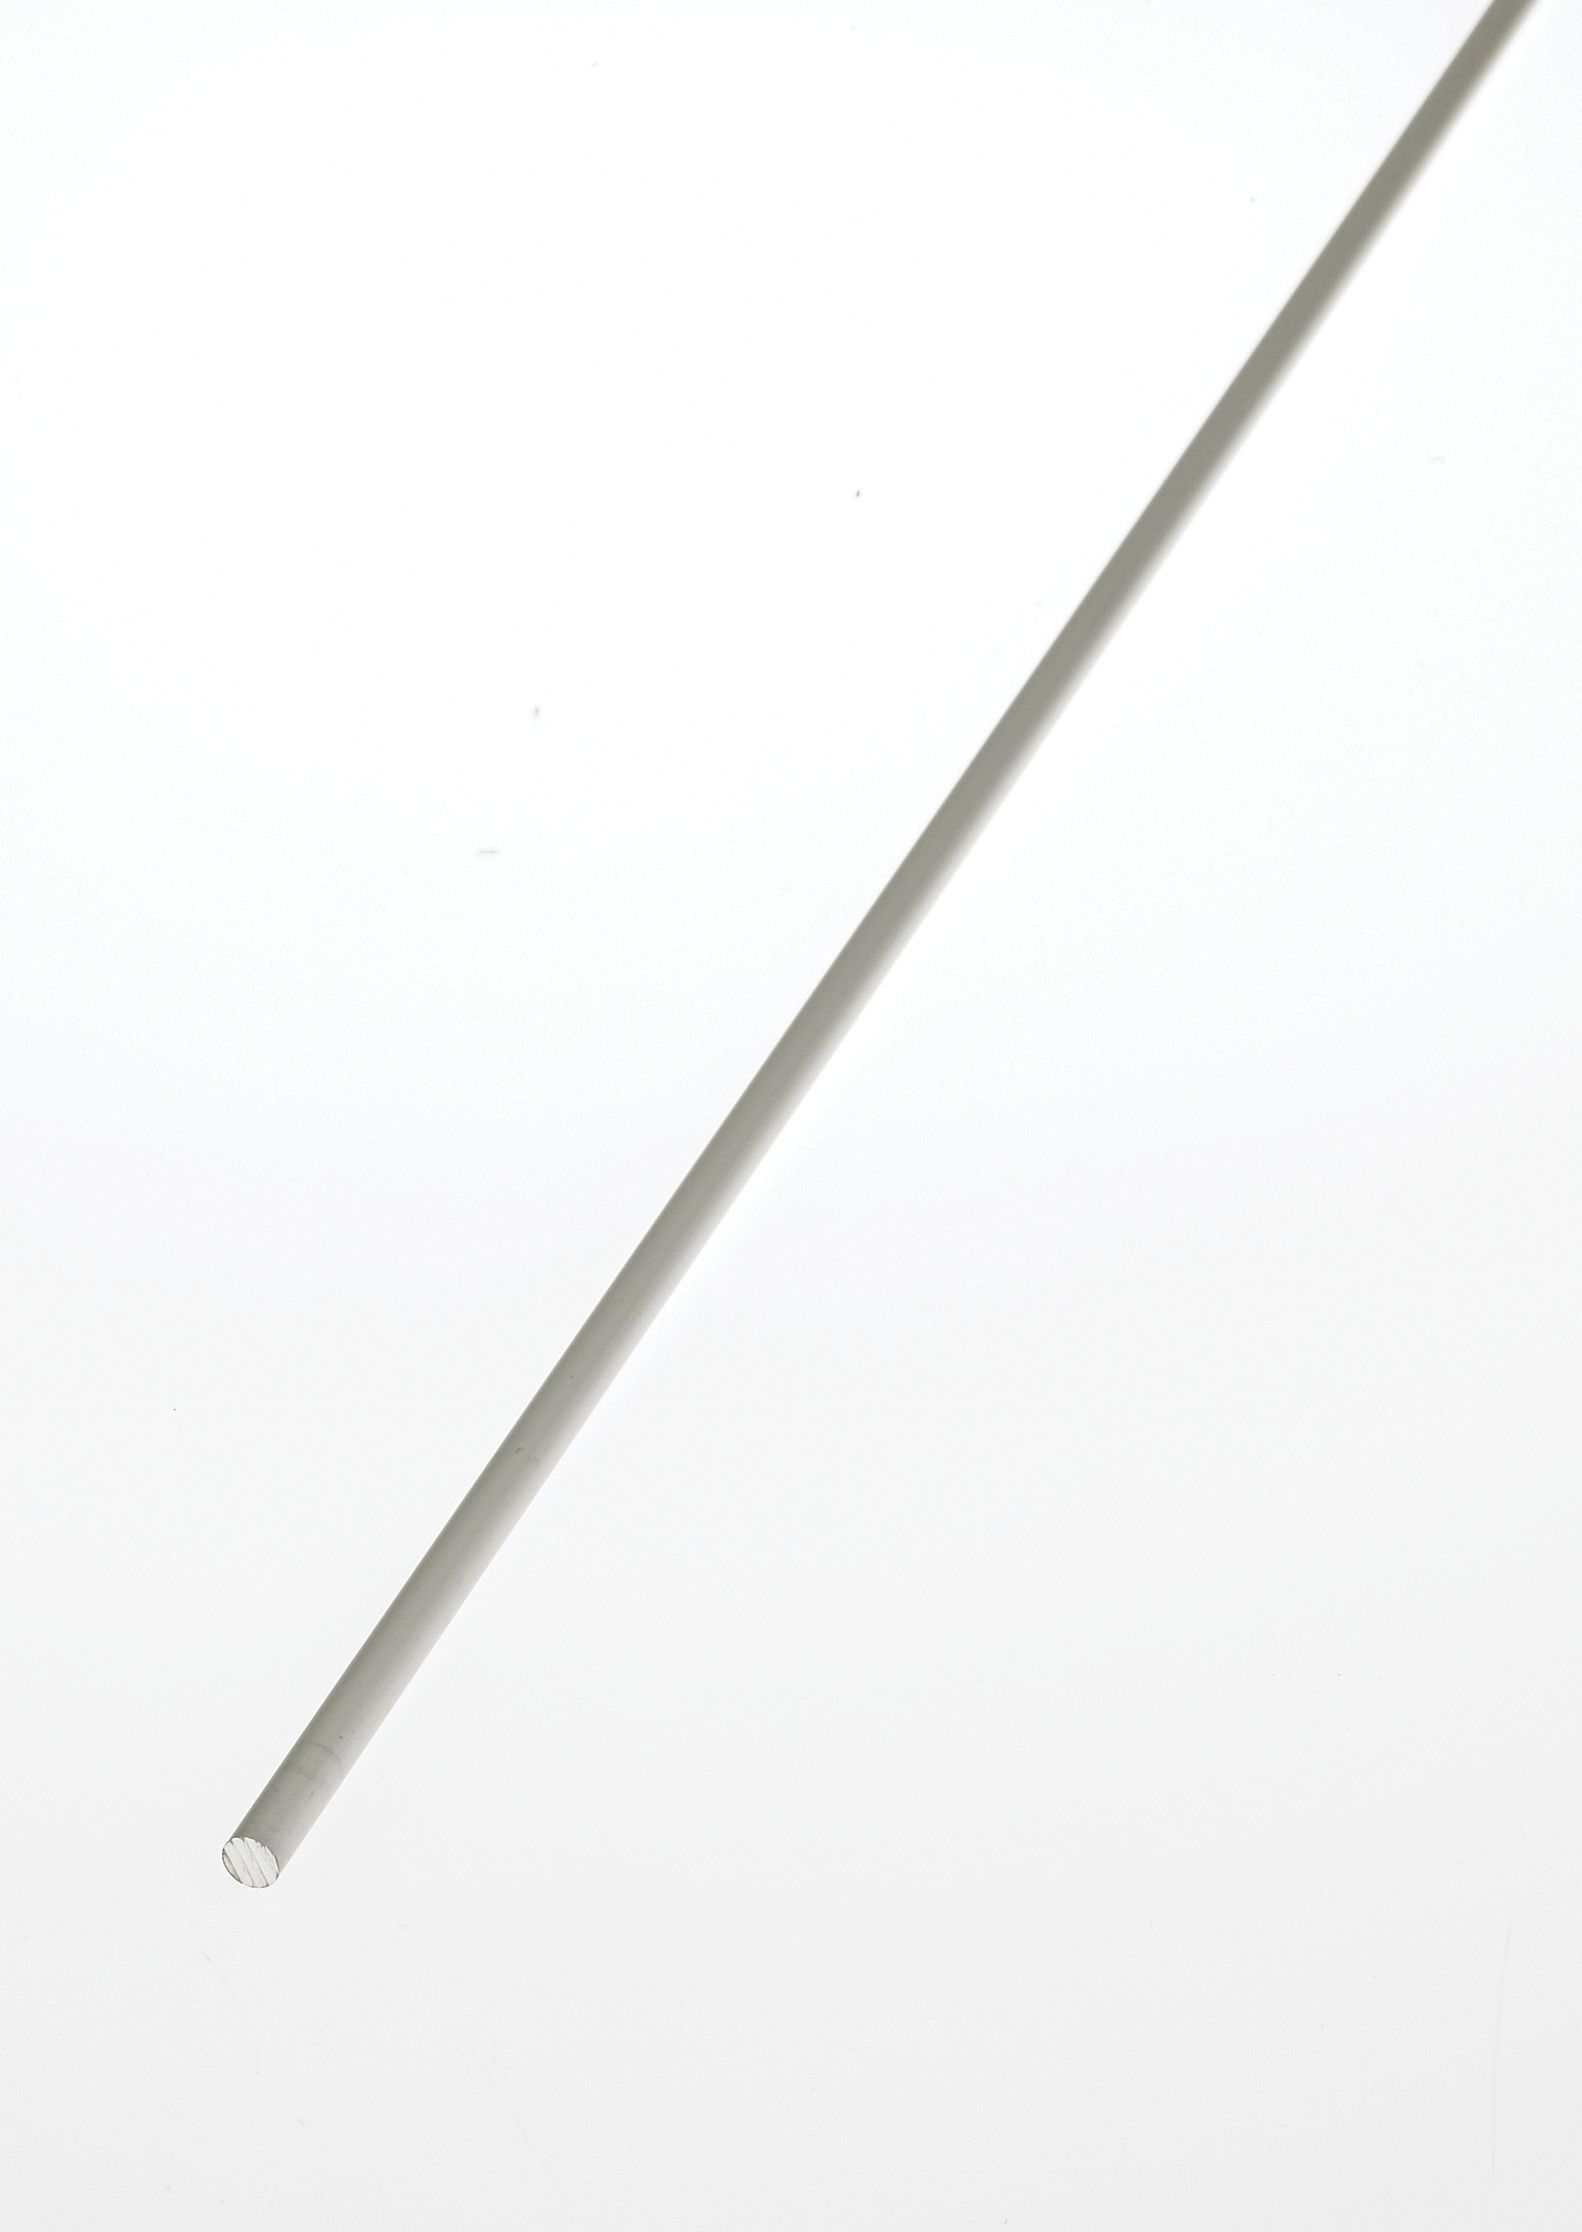 Image of Wickes 6mm Multi-Purpose Rod - Anodised Aluminium 1m